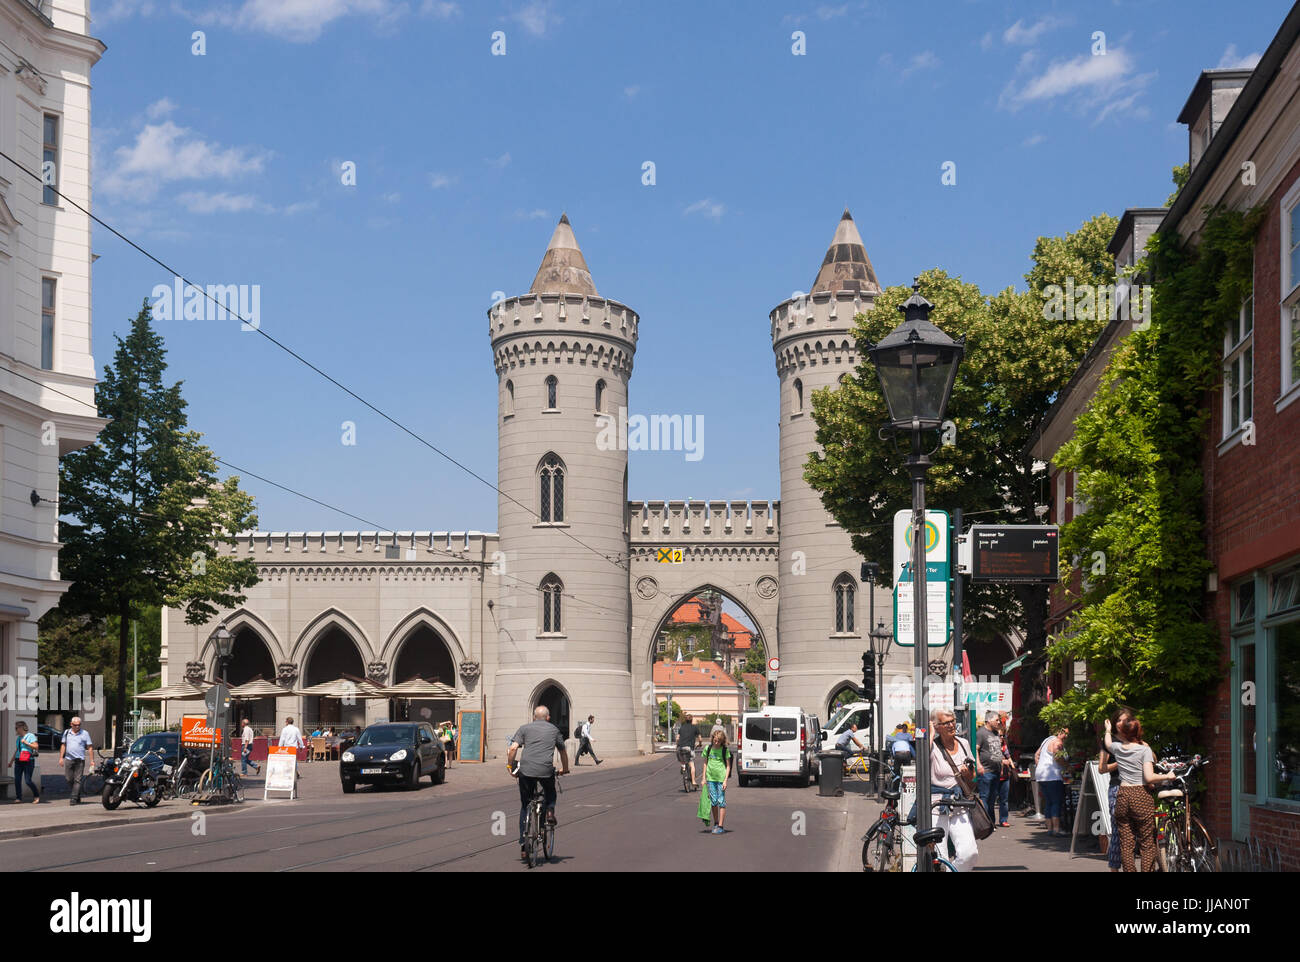 Nauener Tor, construit en 1755, est l'une des trois portes de la ville préservée à Potsdam, en Allemagne. Voies de Tram continuer par la porte. Banque D'Images